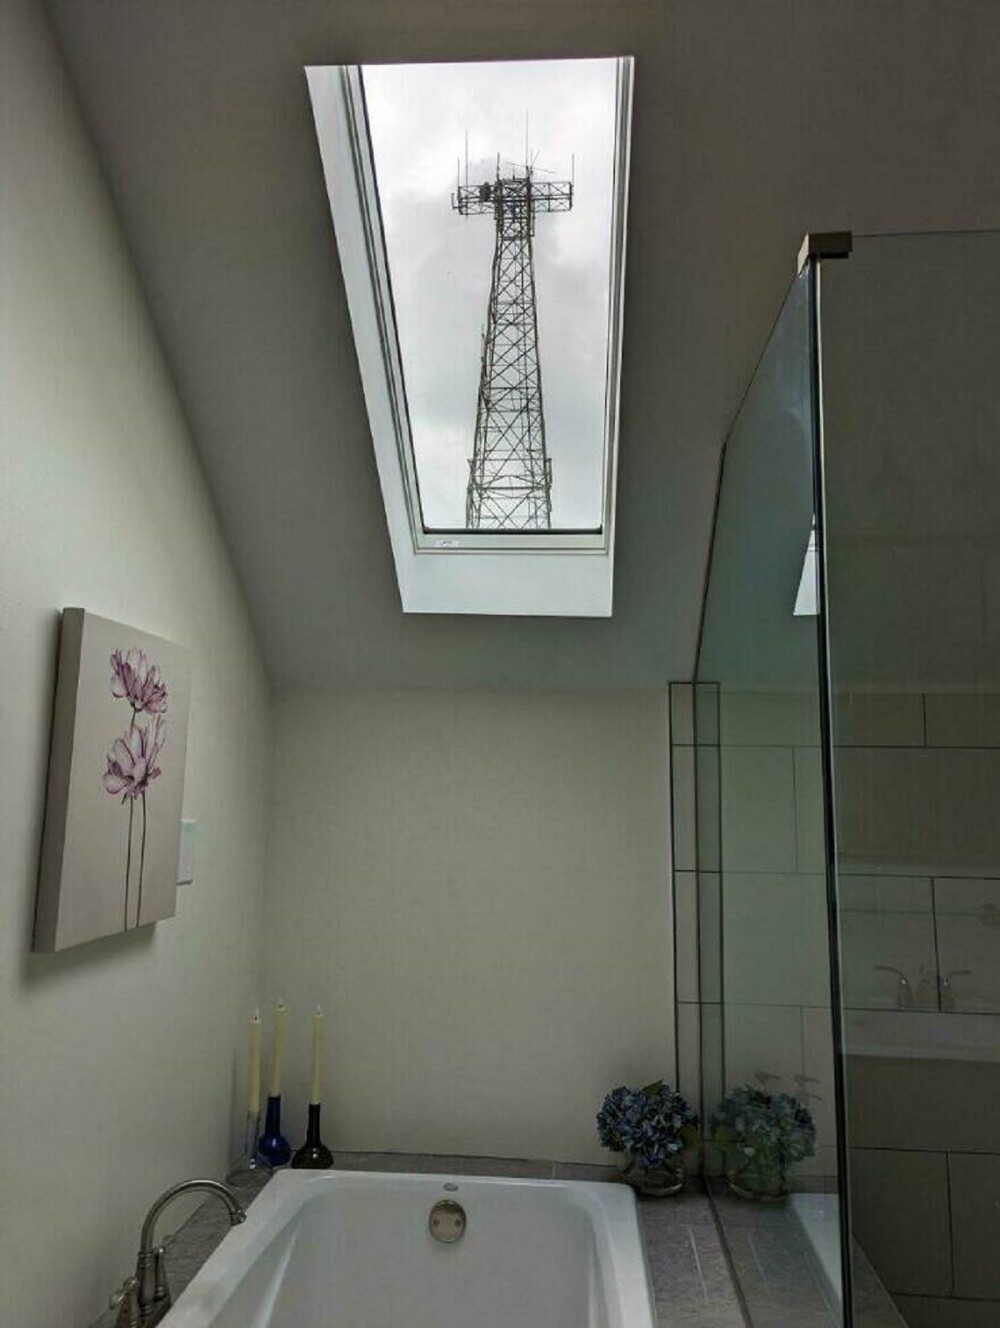 21. "Установил в ванной комнате новое окно, не подозревая, что оно идеально обрамит эту ужасную башню"